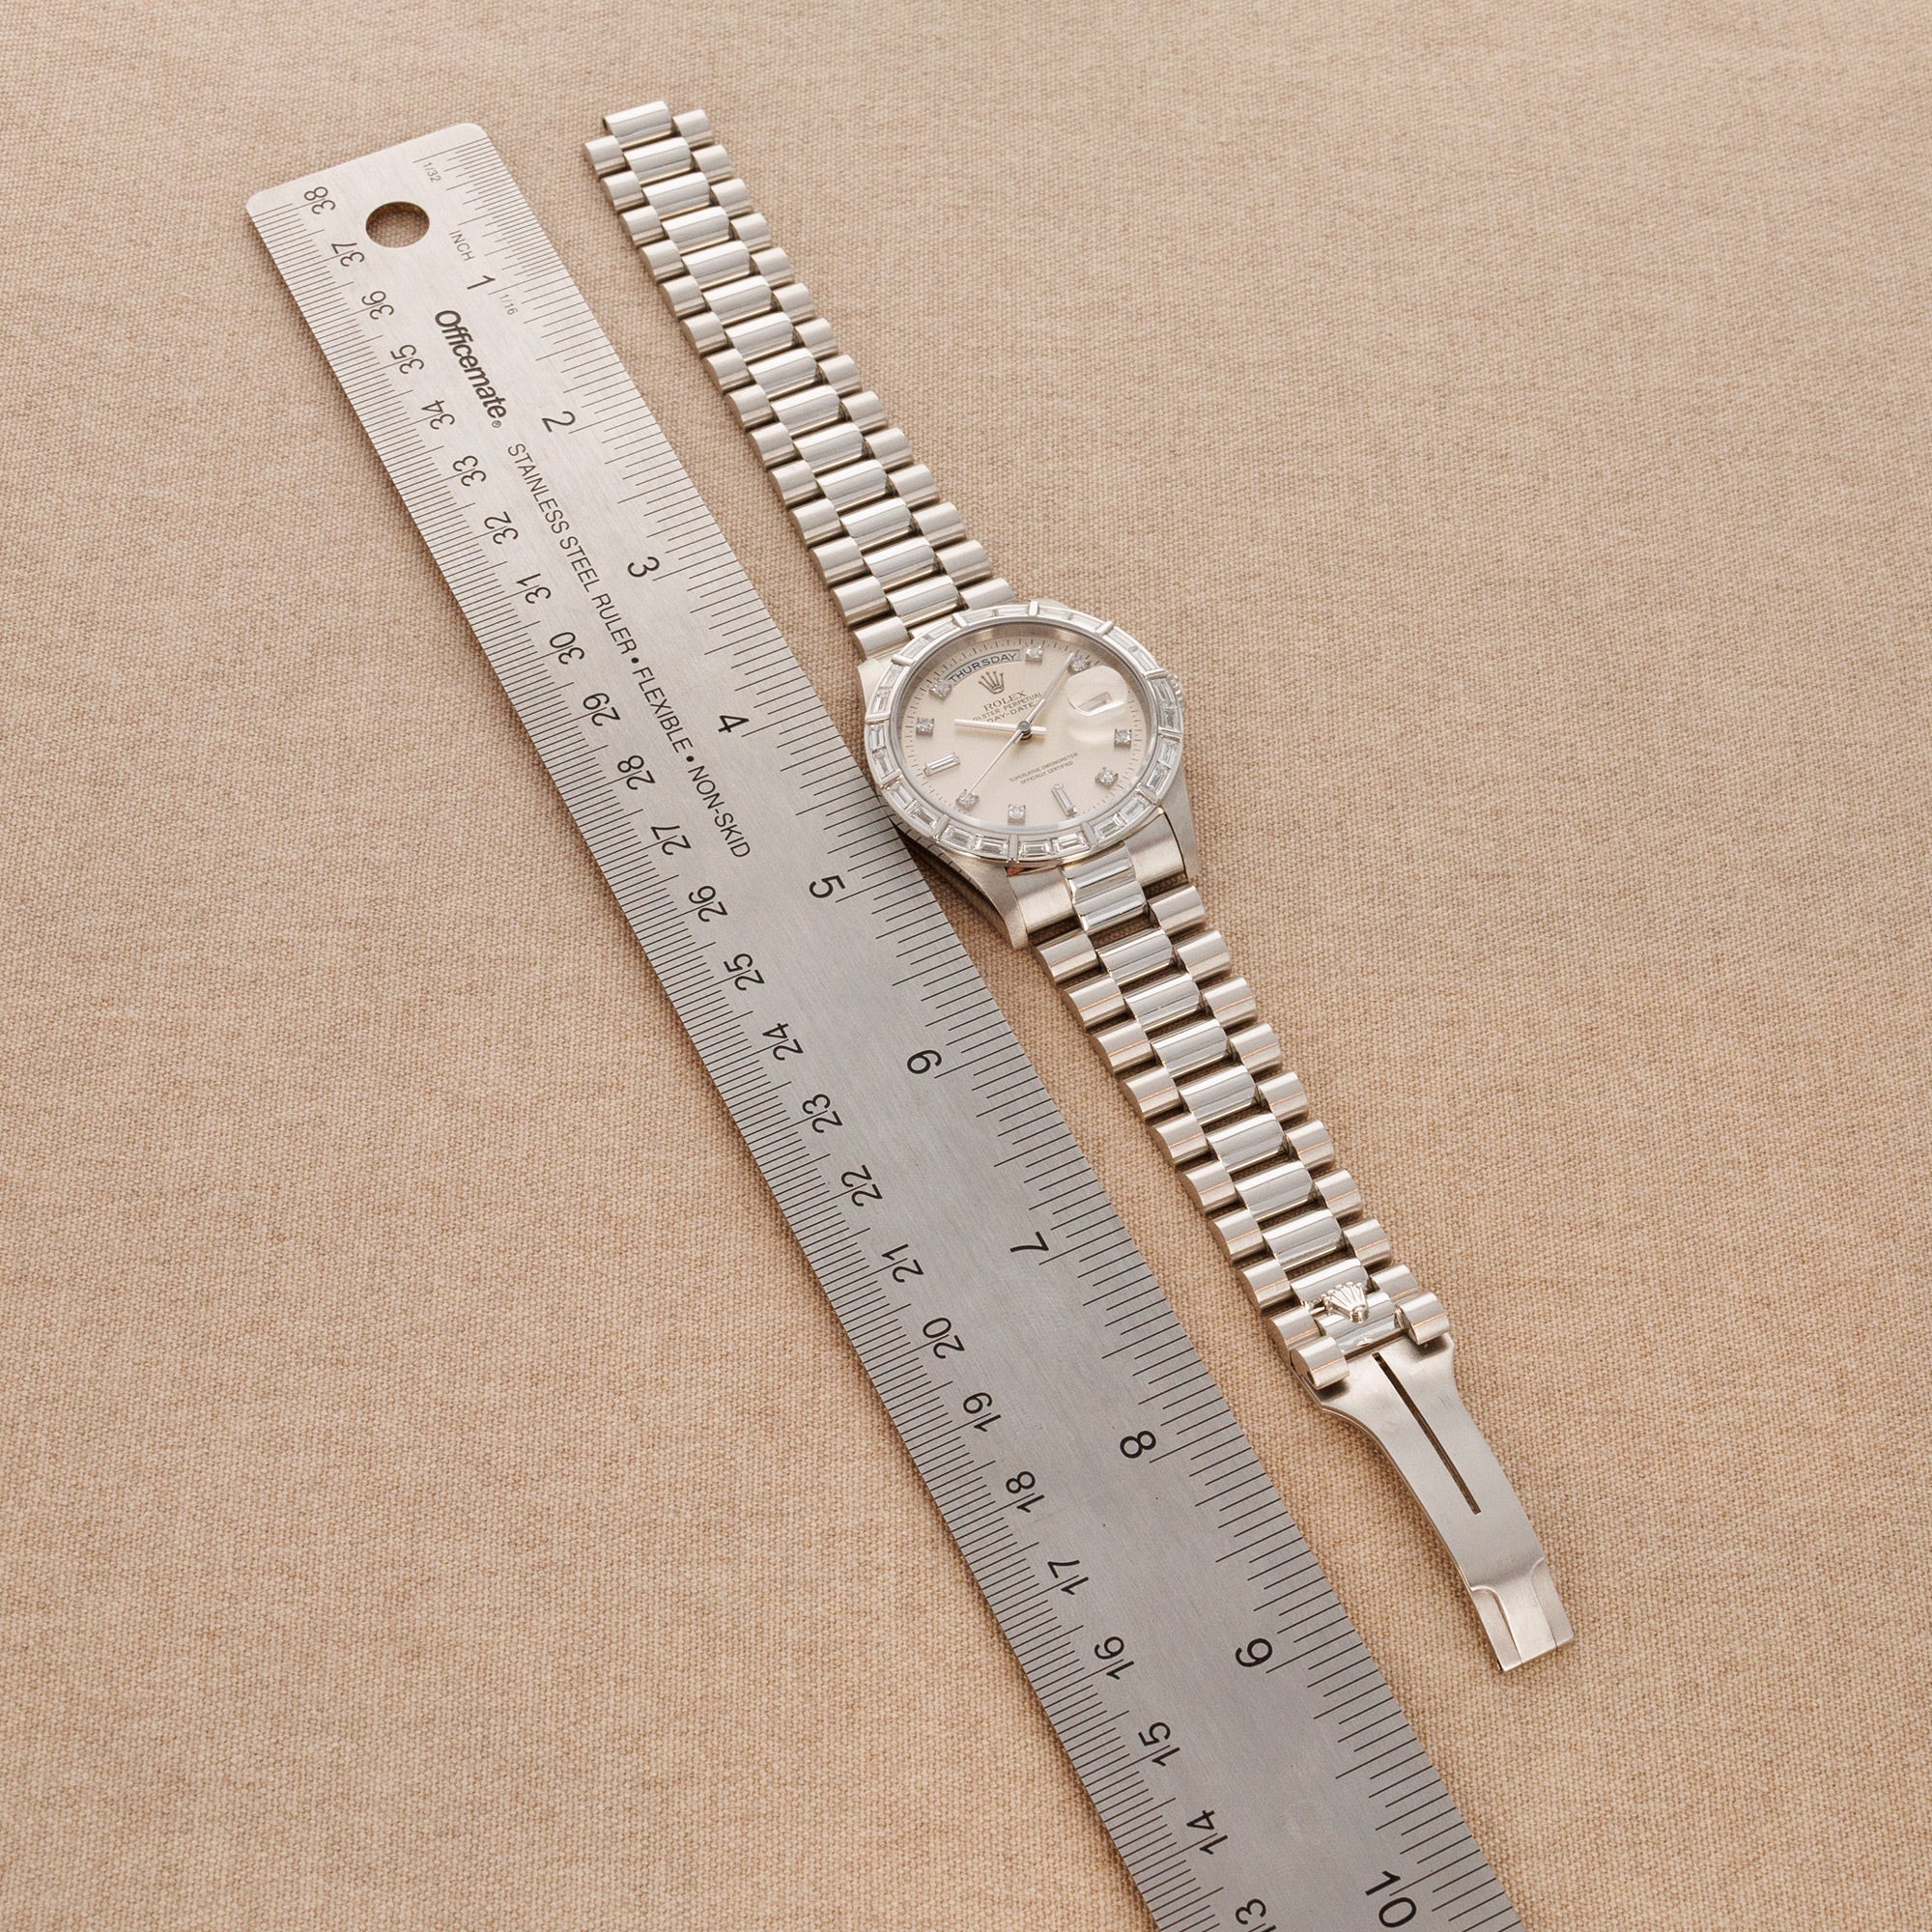 Rolex Platinum Day-Date Baguette Diamond Watch Ref. 18366 with Bucherer Warranty